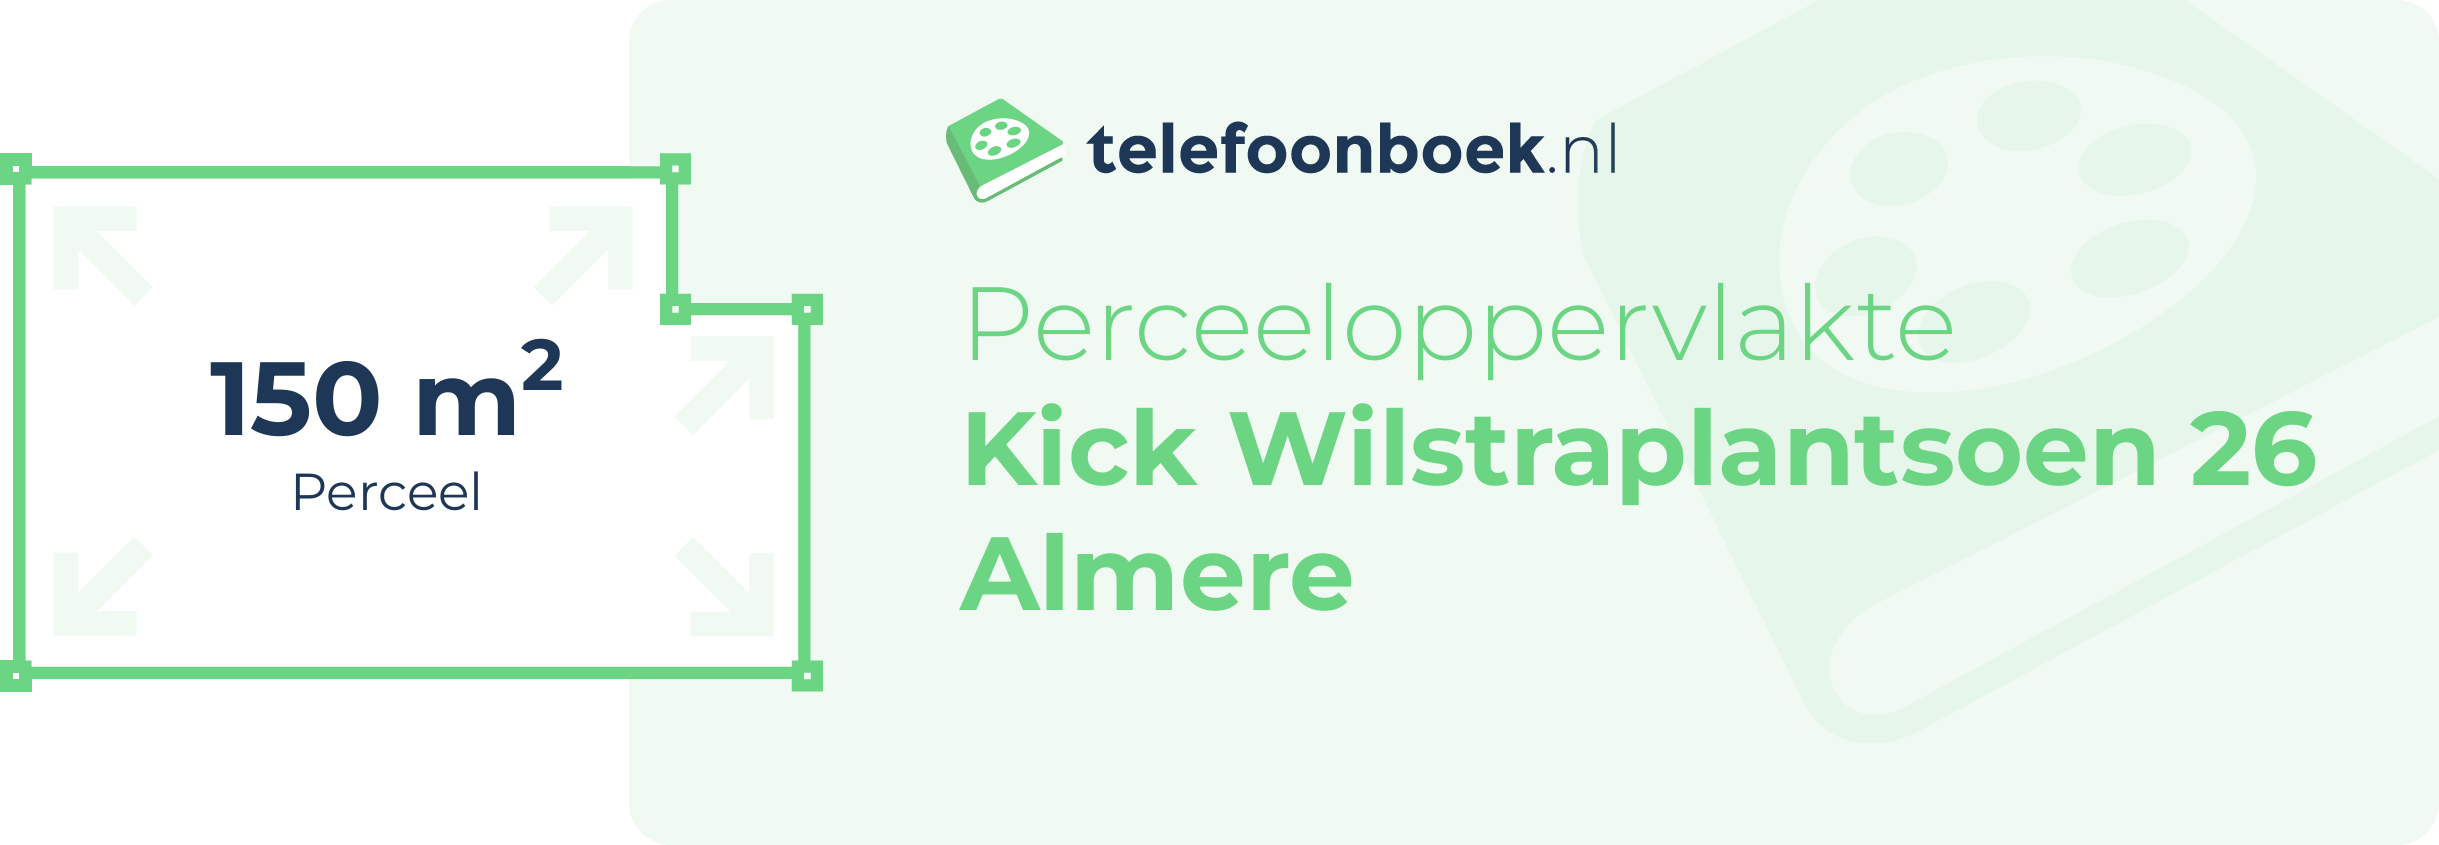 Perceeloppervlakte Kick Wilstraplantsoen 26 Almere